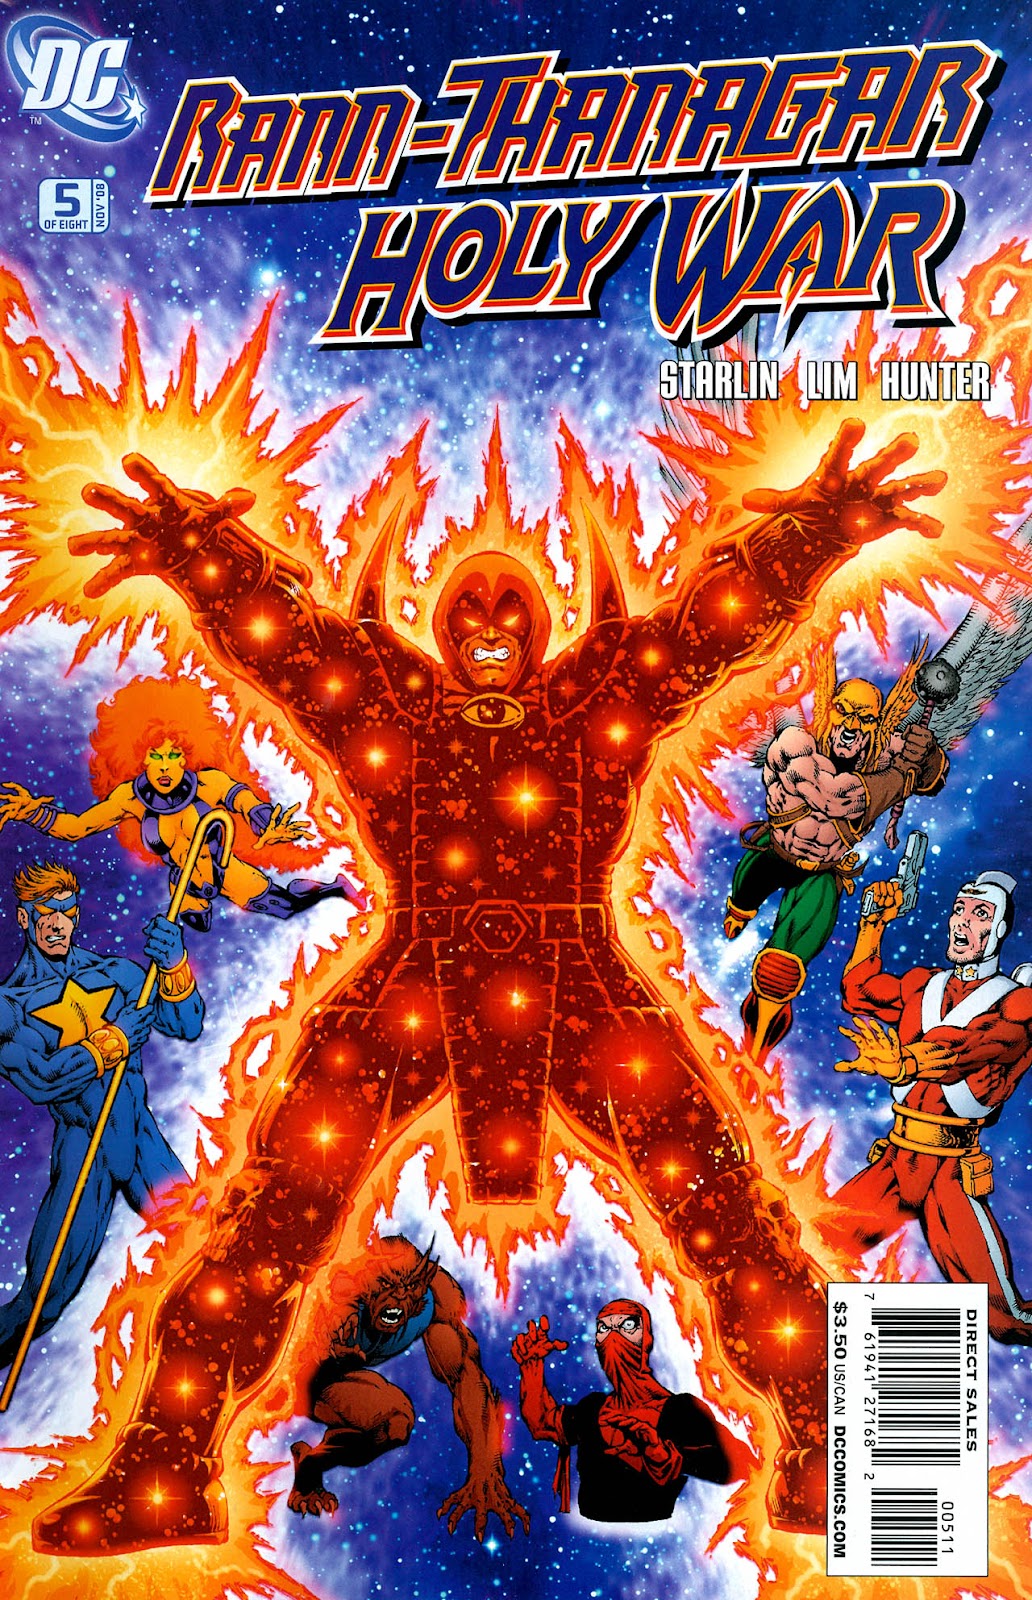 Rann/Thanagar Holy War issue 5 - Page 1